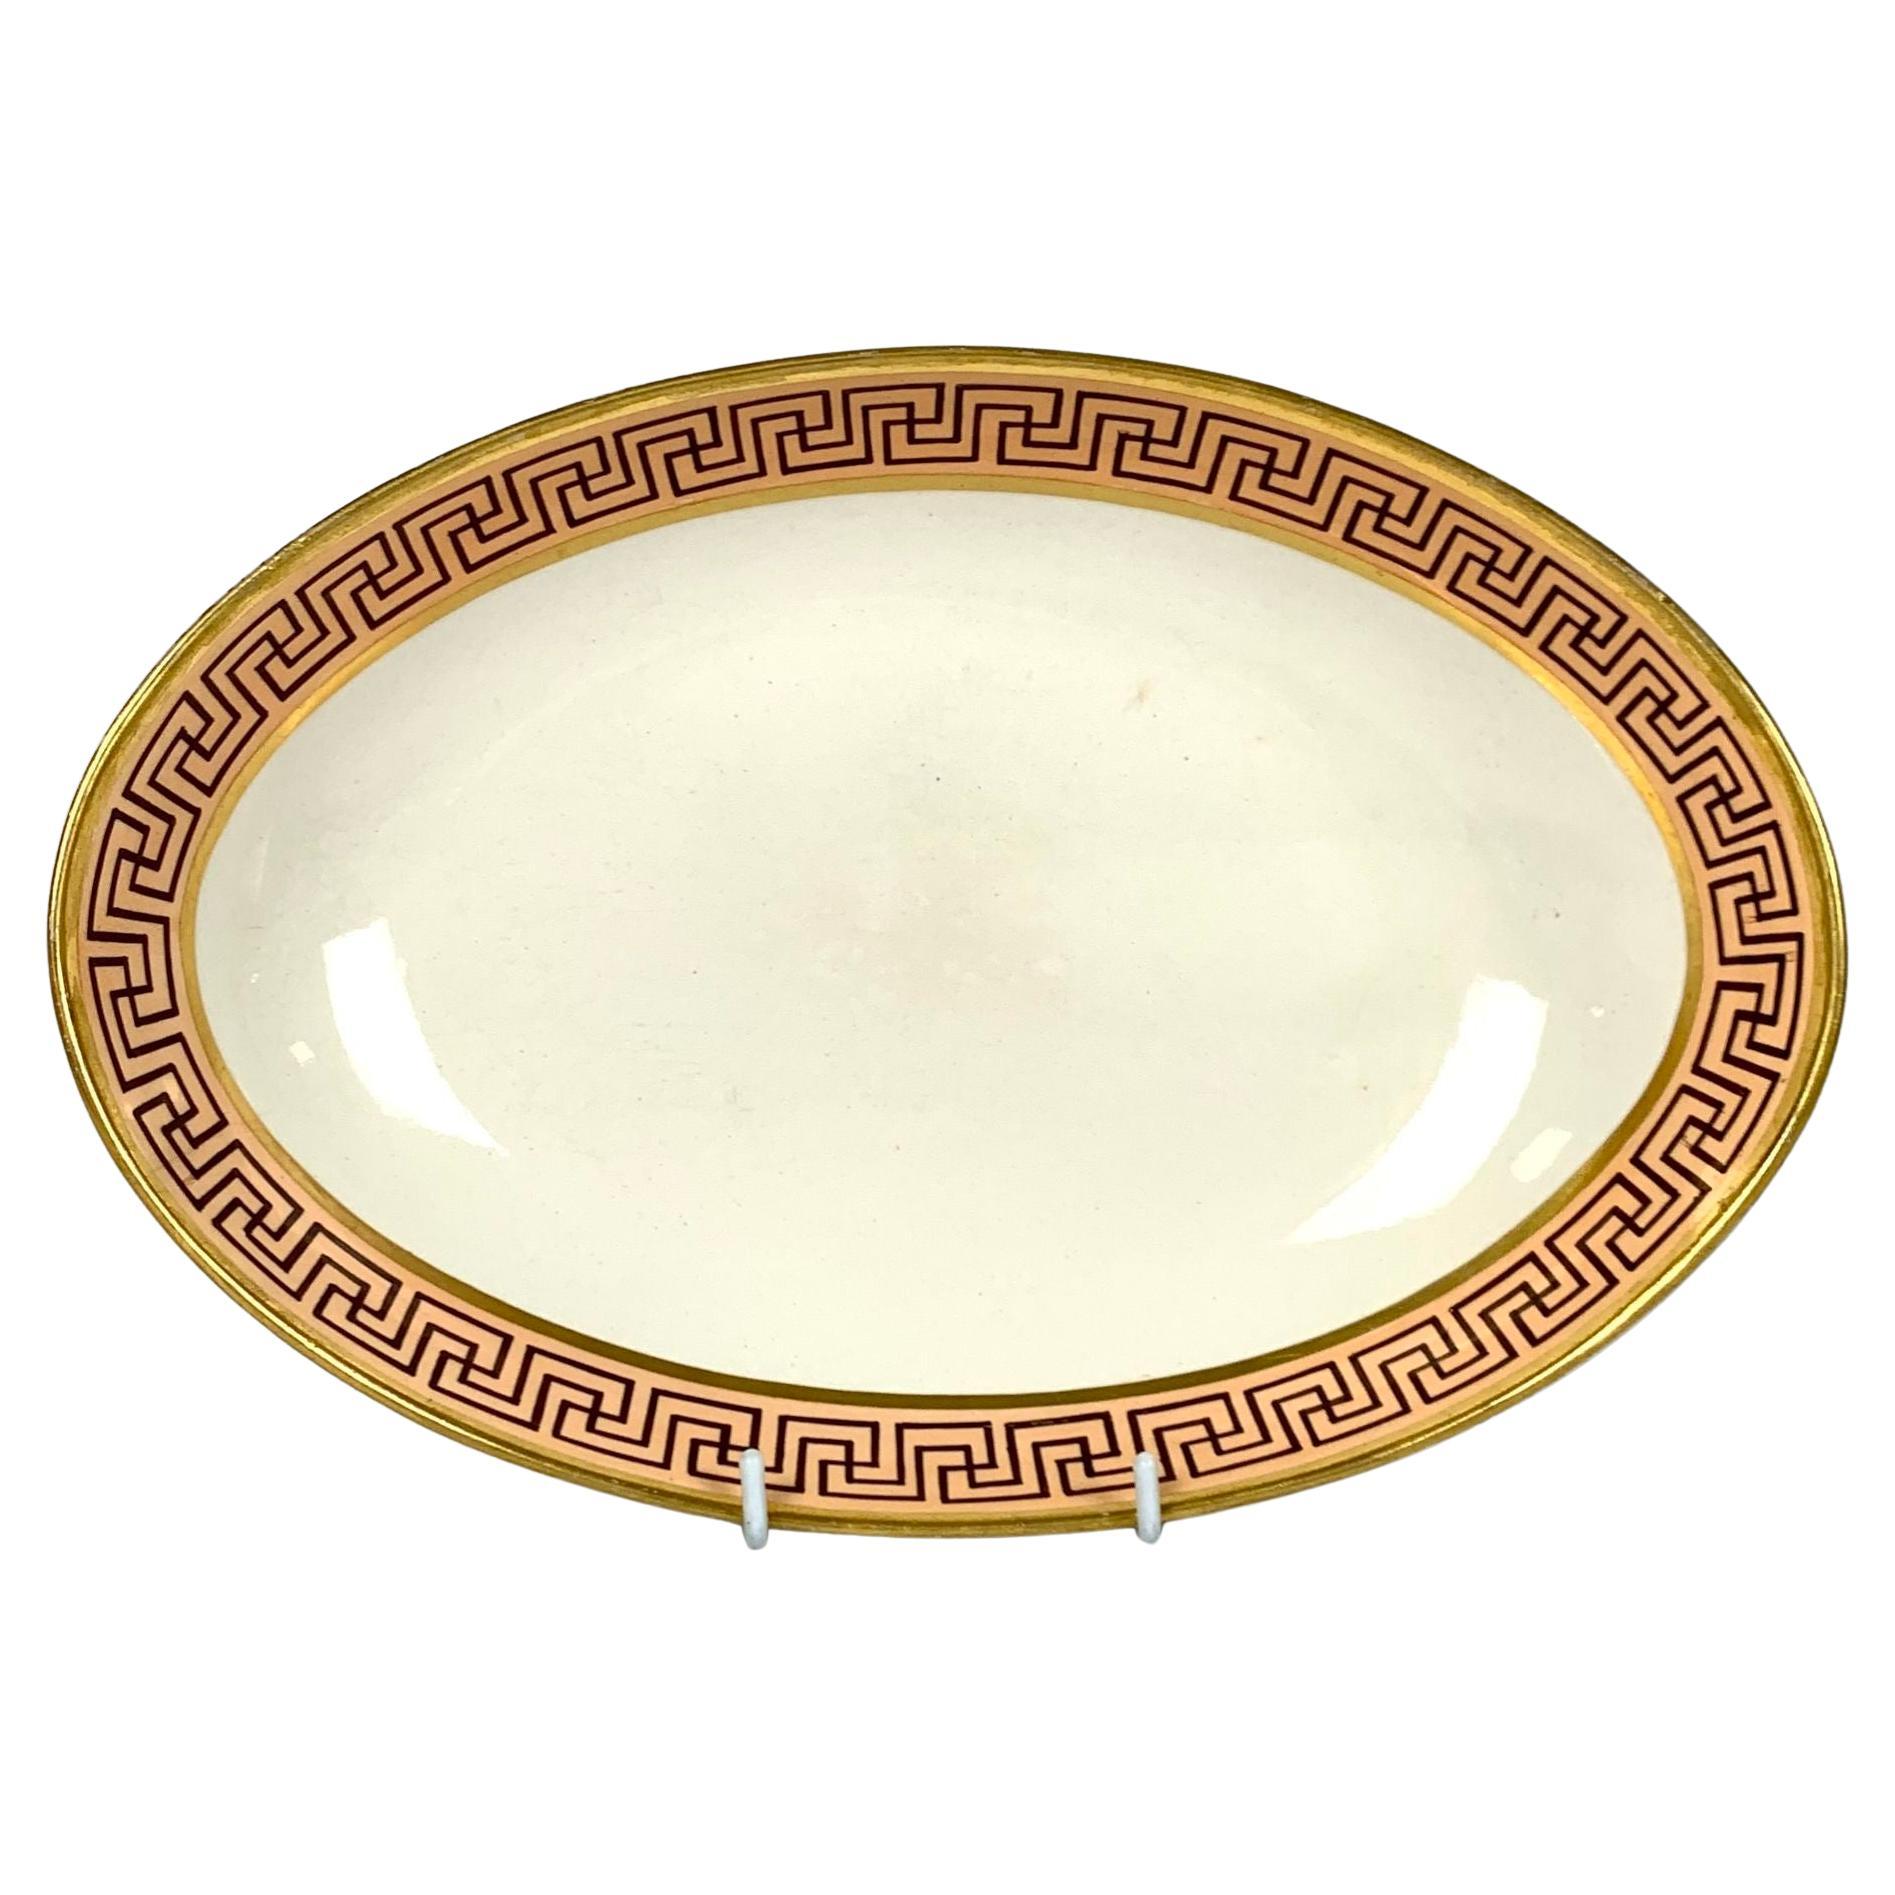 Décoration de clés grecques sur un plat en céramique perlée anglaise de la période Régence, couleur pêche et violet